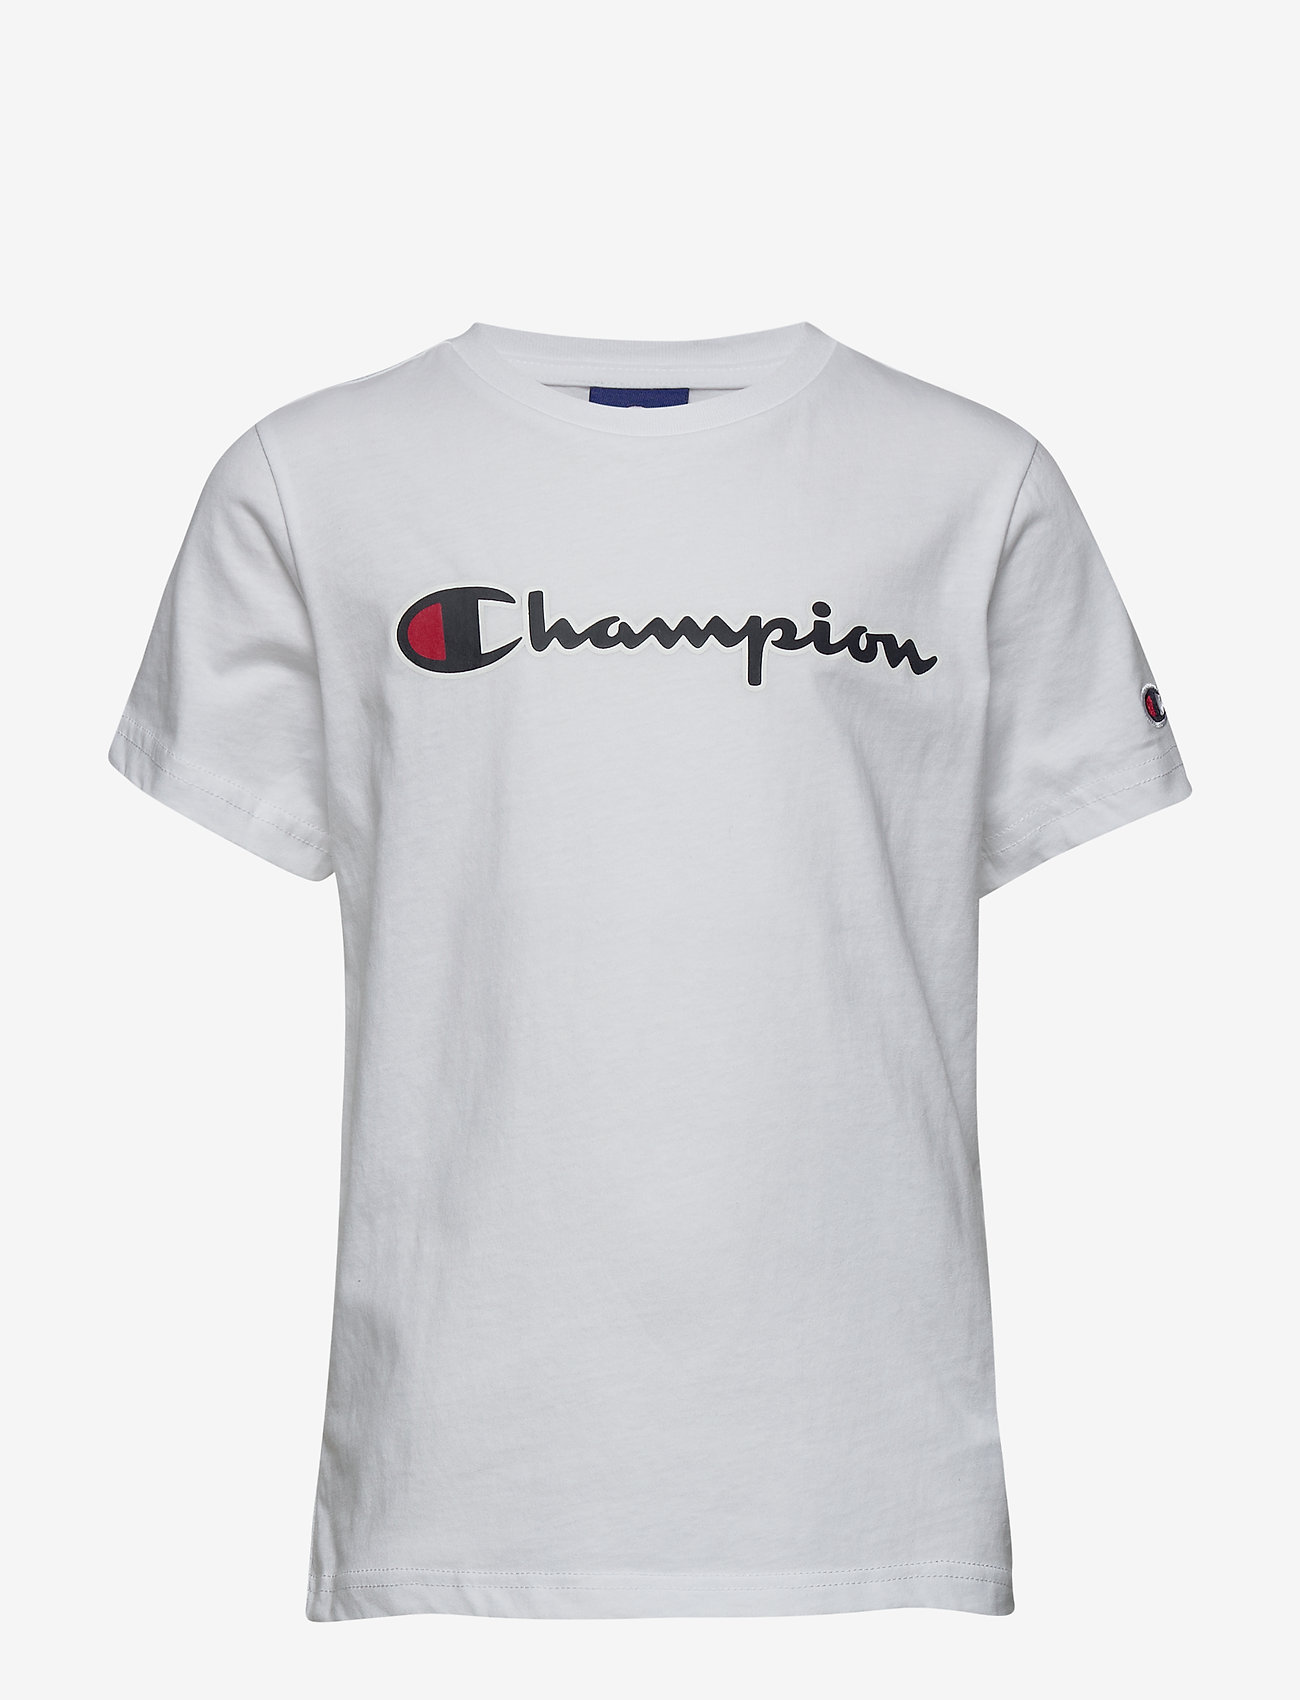 champion tops